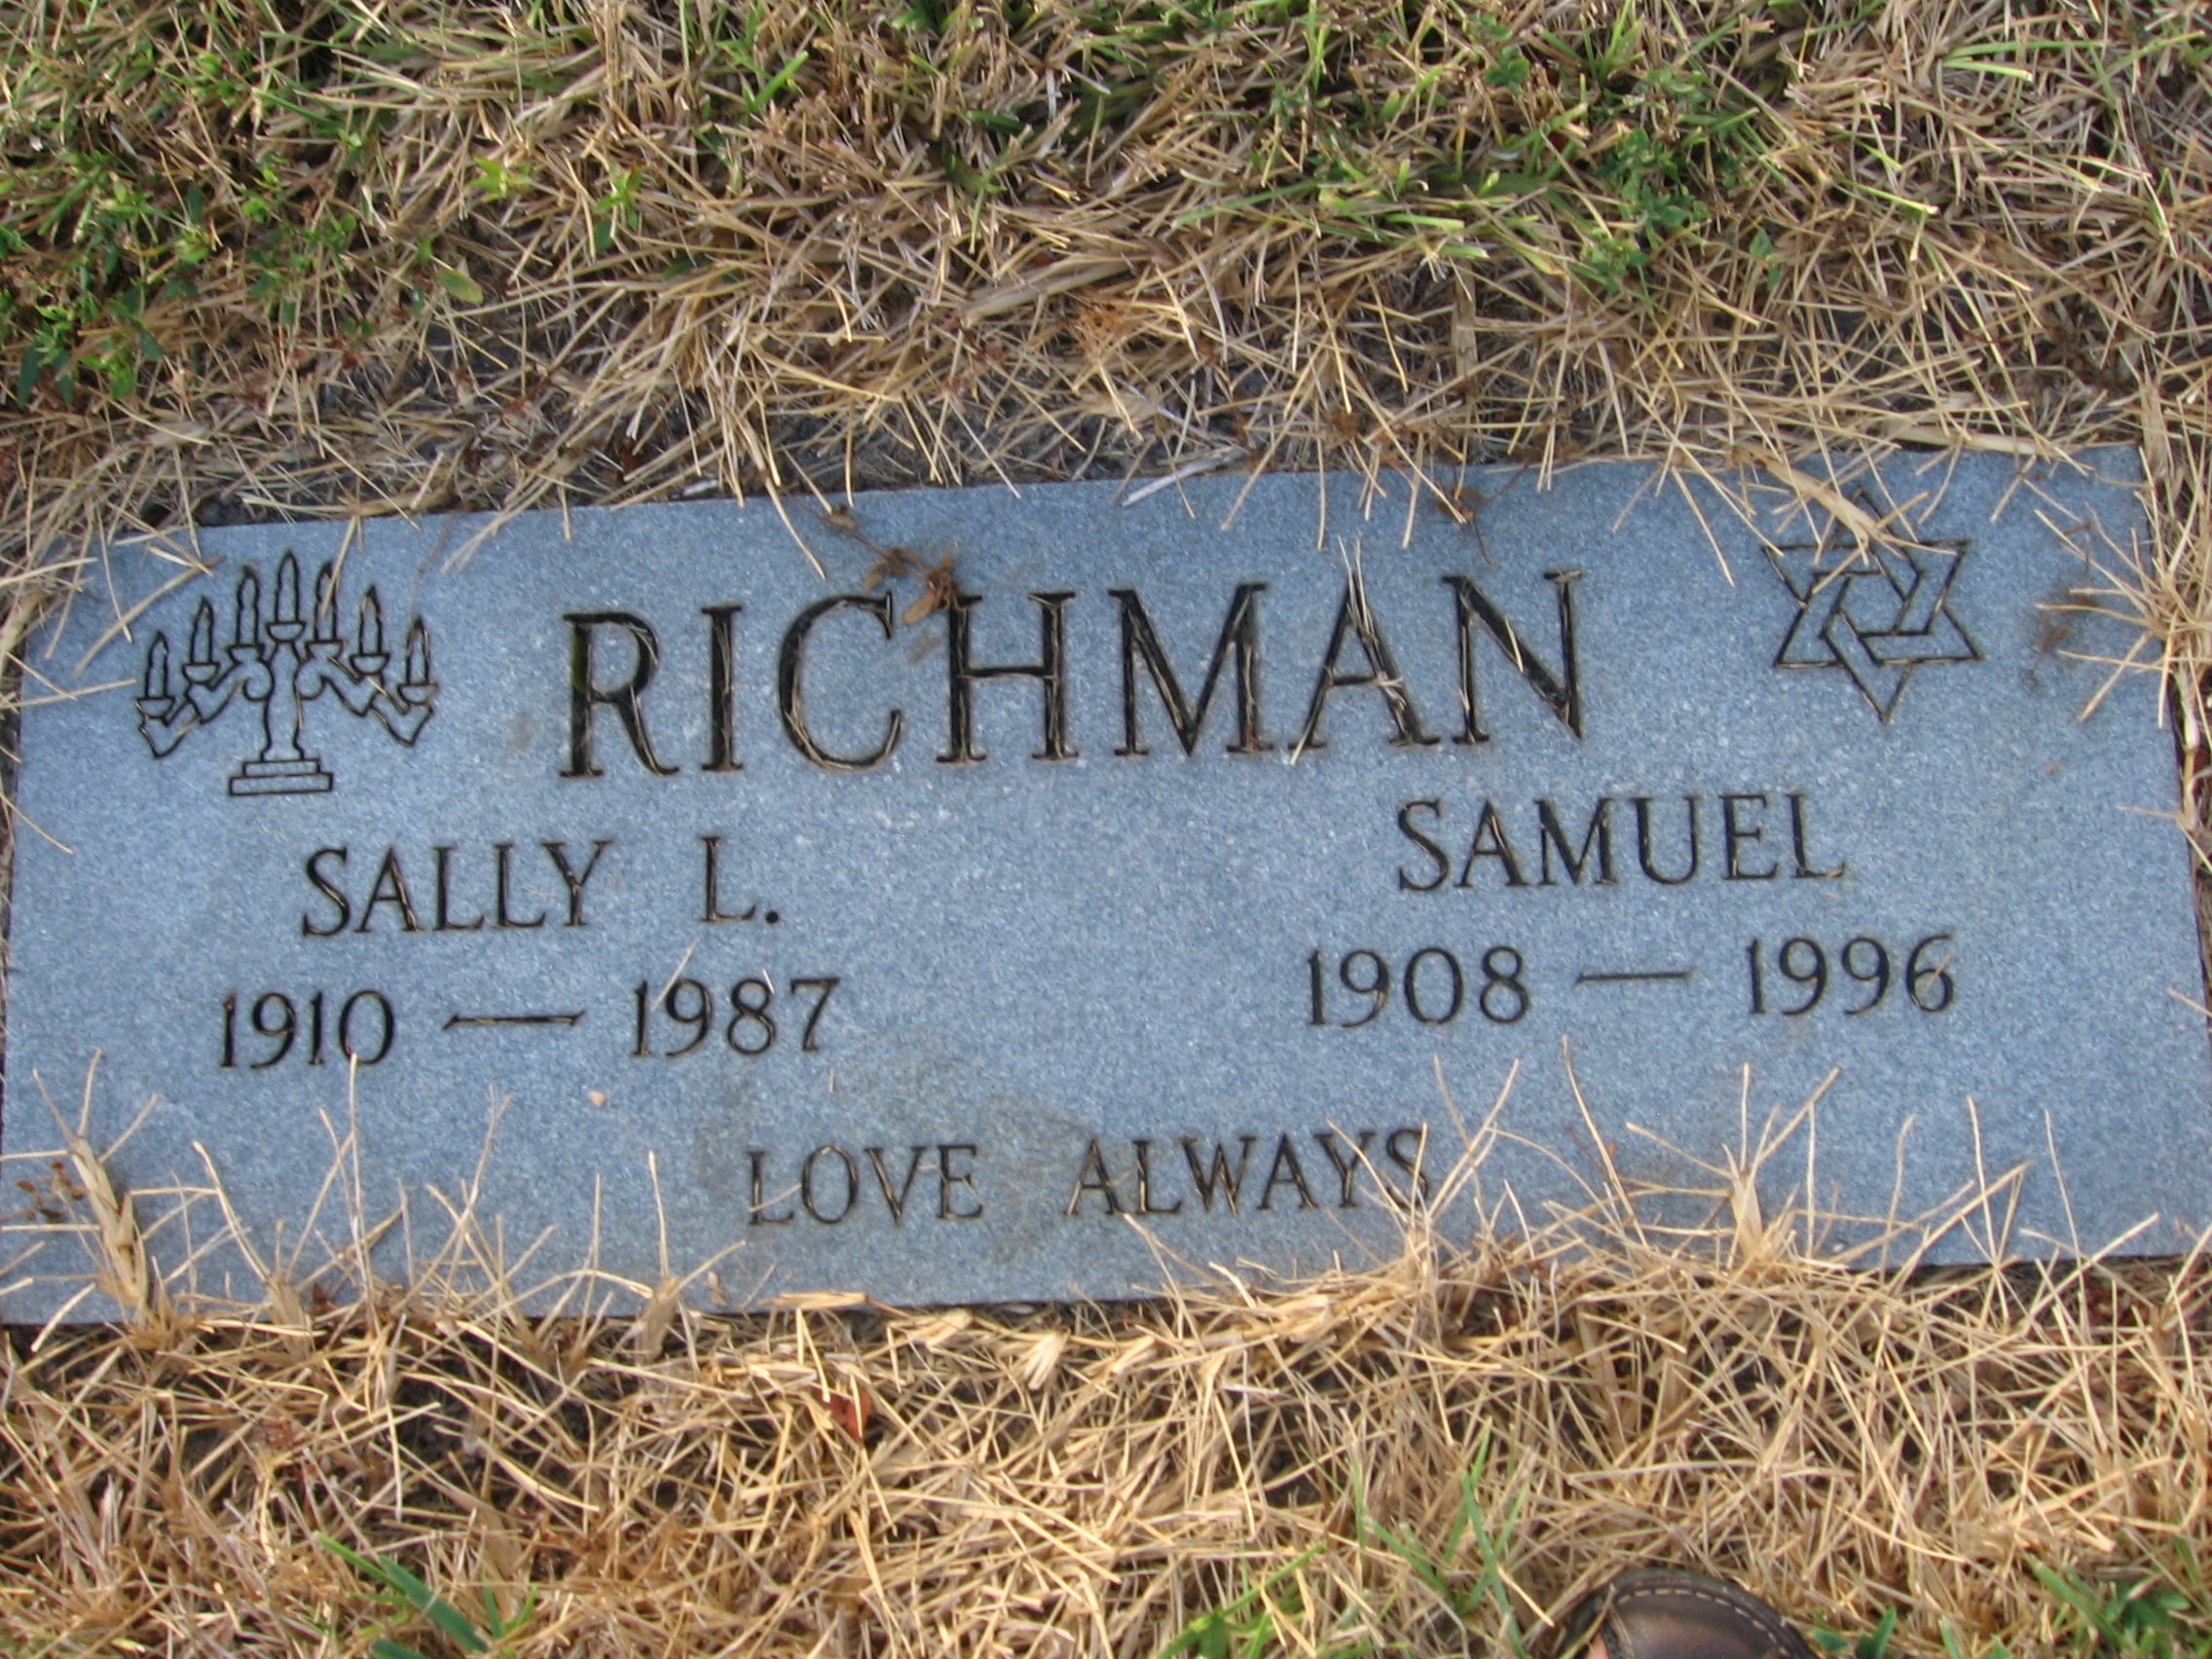 Samuel Richman